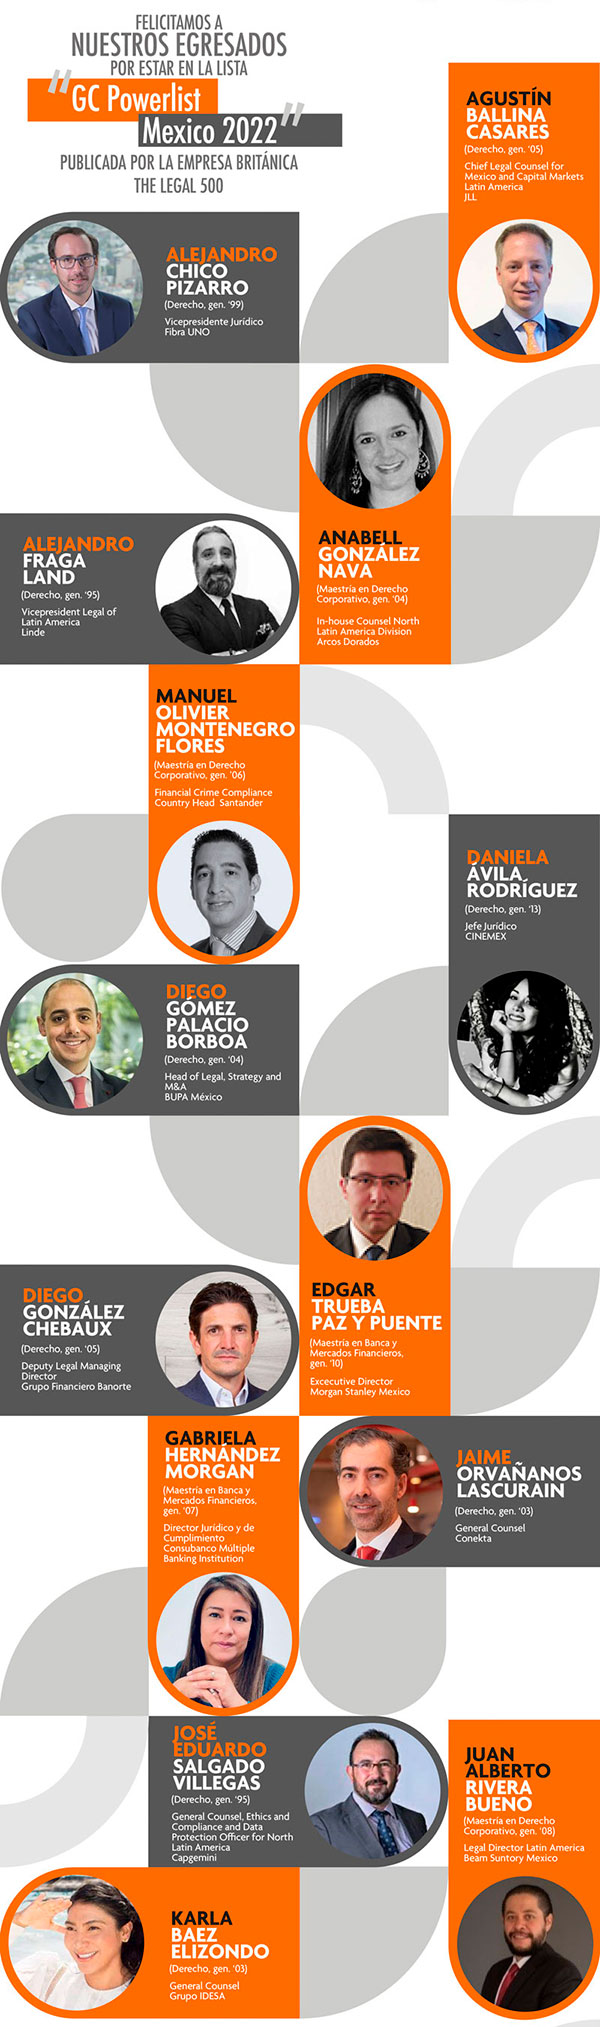 Egresados Anáhuac, entre los mejores abogados de la GC Powerlist Mexico 2022